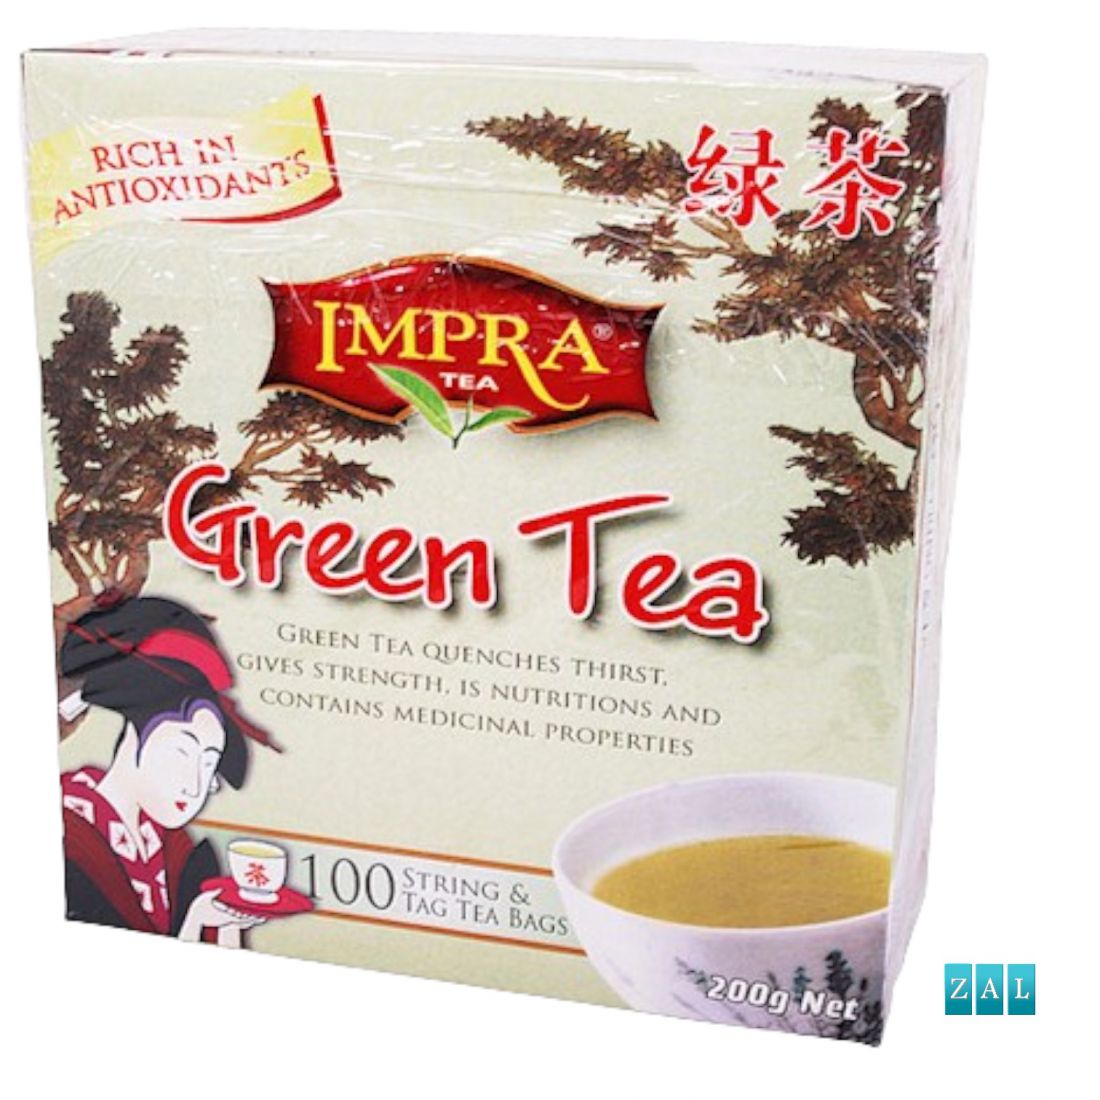 Ceylon zöld tea tasakban 100db 200g